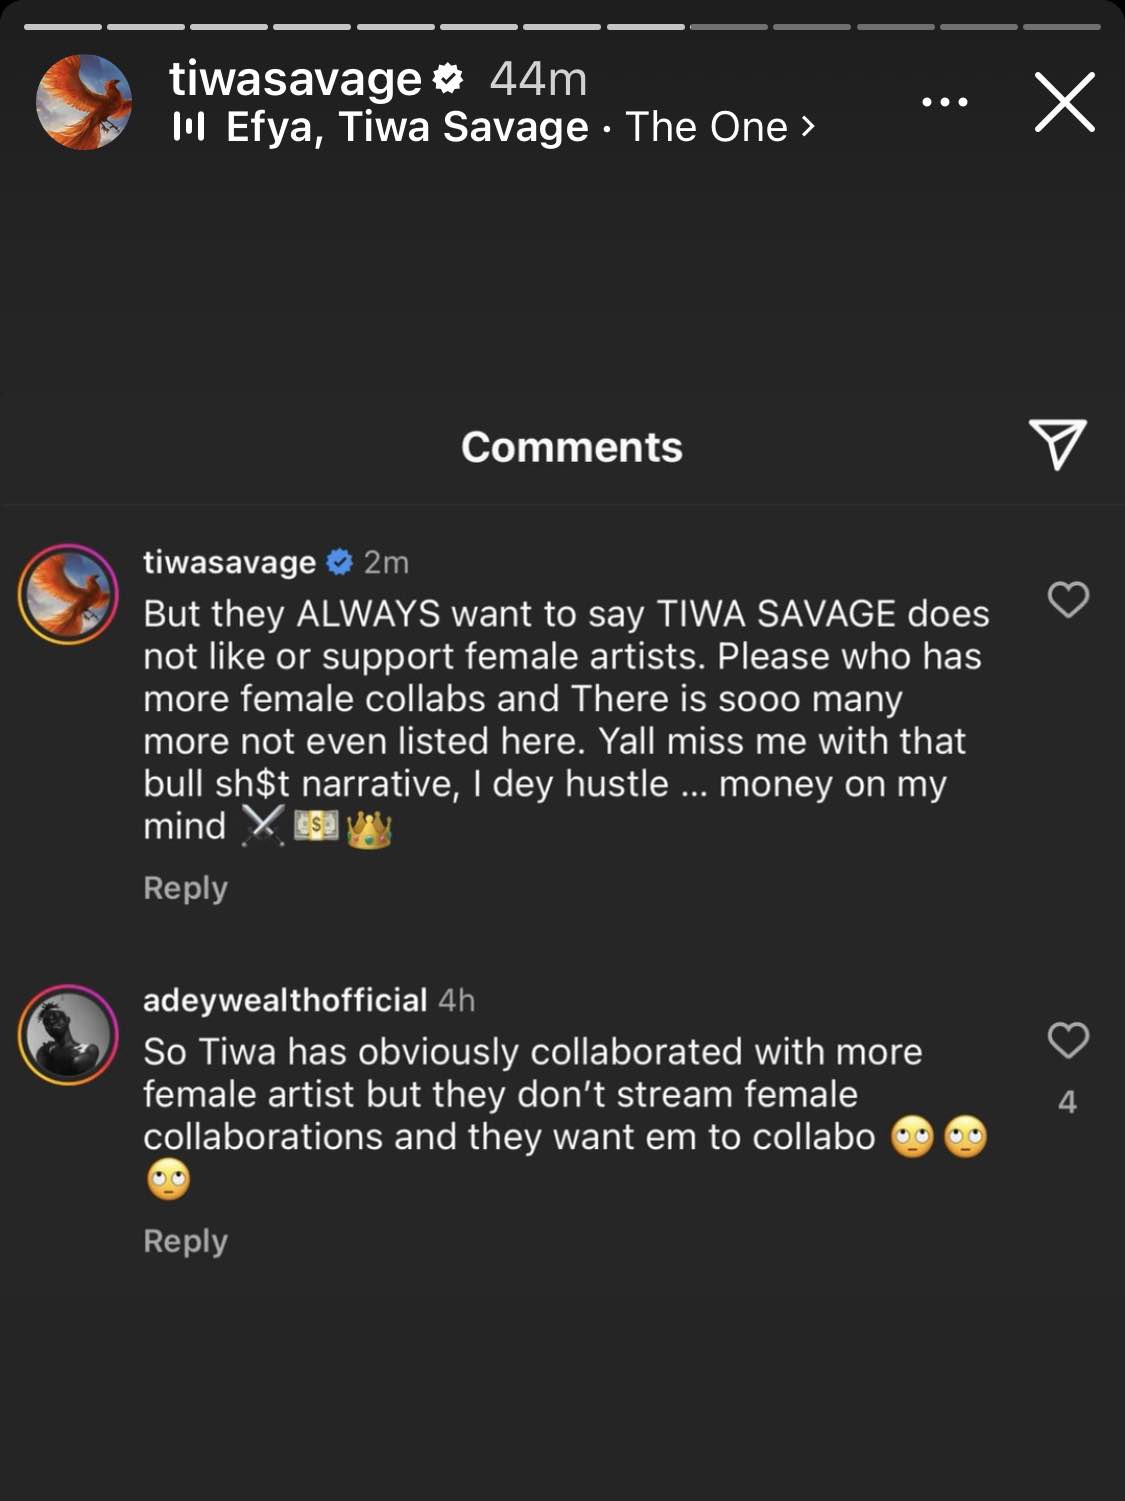 Tiwa Savage encerra rumores sobre não apoiar artistas femininas